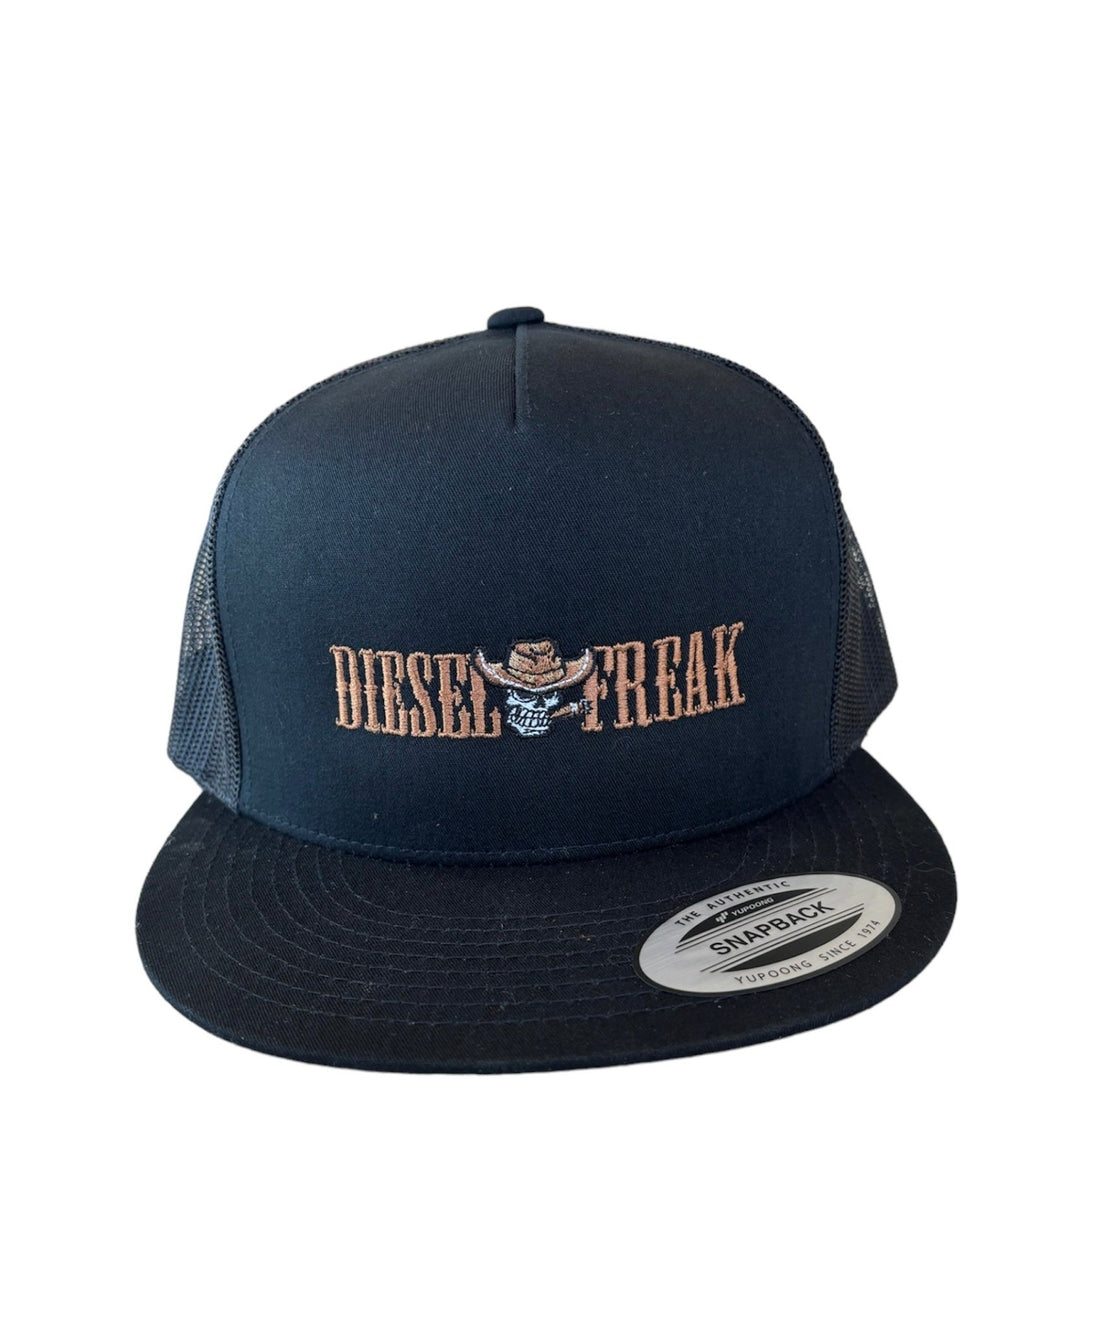 Wanted Diesel Freak Snapback Hat - Brown - Diesel Freak